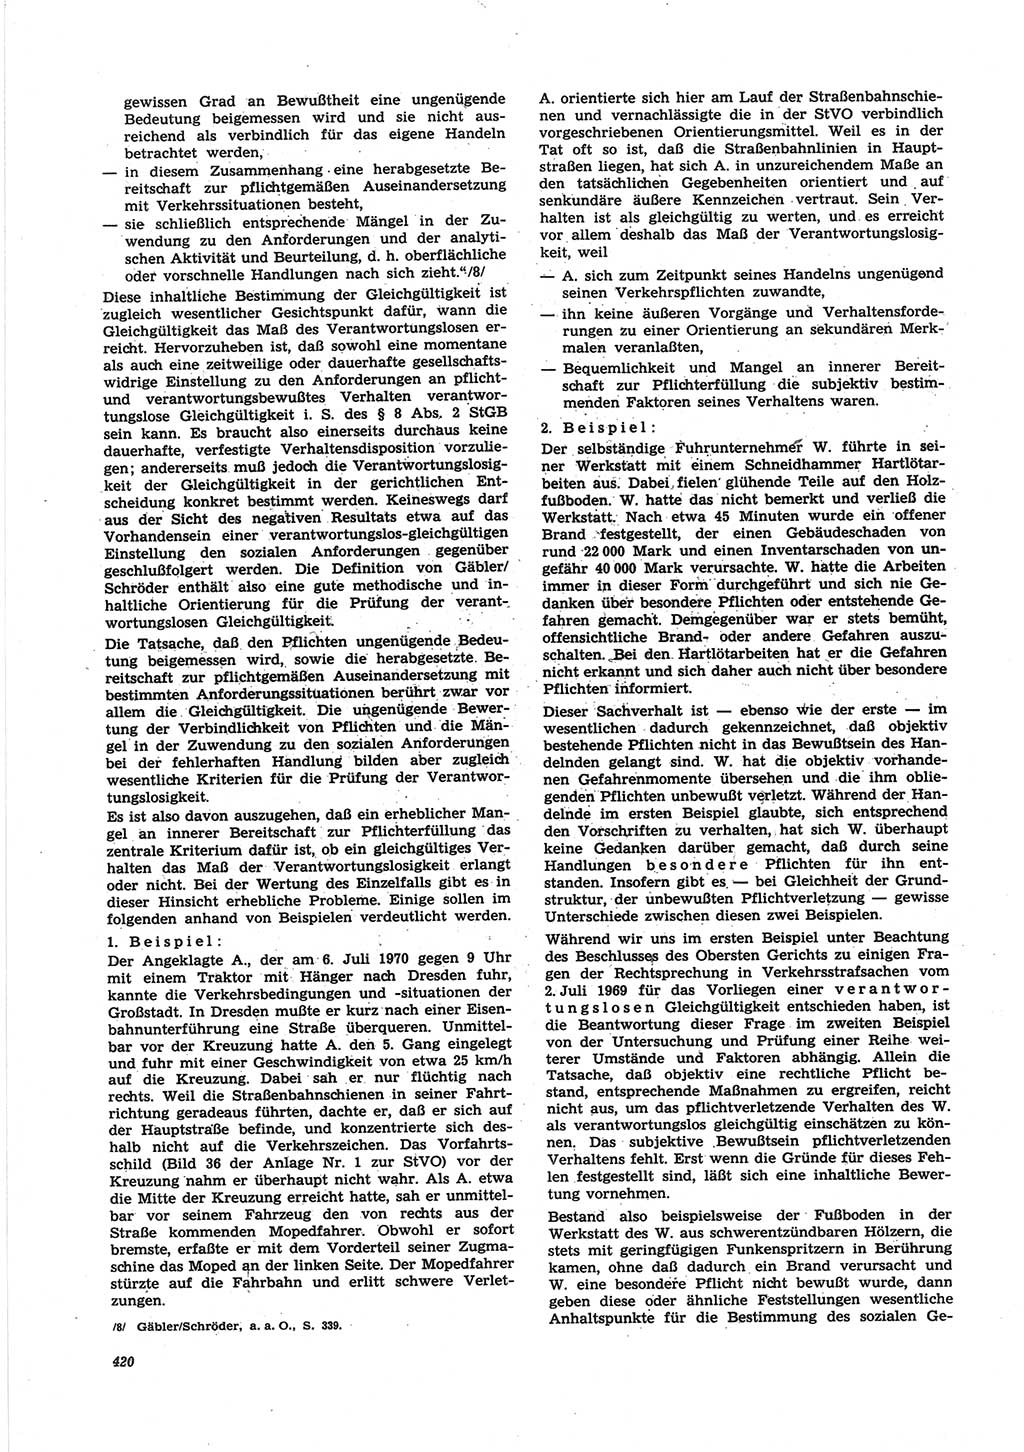 Neue Justiz (NJ), Zeitschrift für Recht und Rechtswissenschaft [Deutsche Demokratische Republik (DDR)], 25. Jahrgang 1971, Seite 420 (NJ DDR 1971, S. 420)